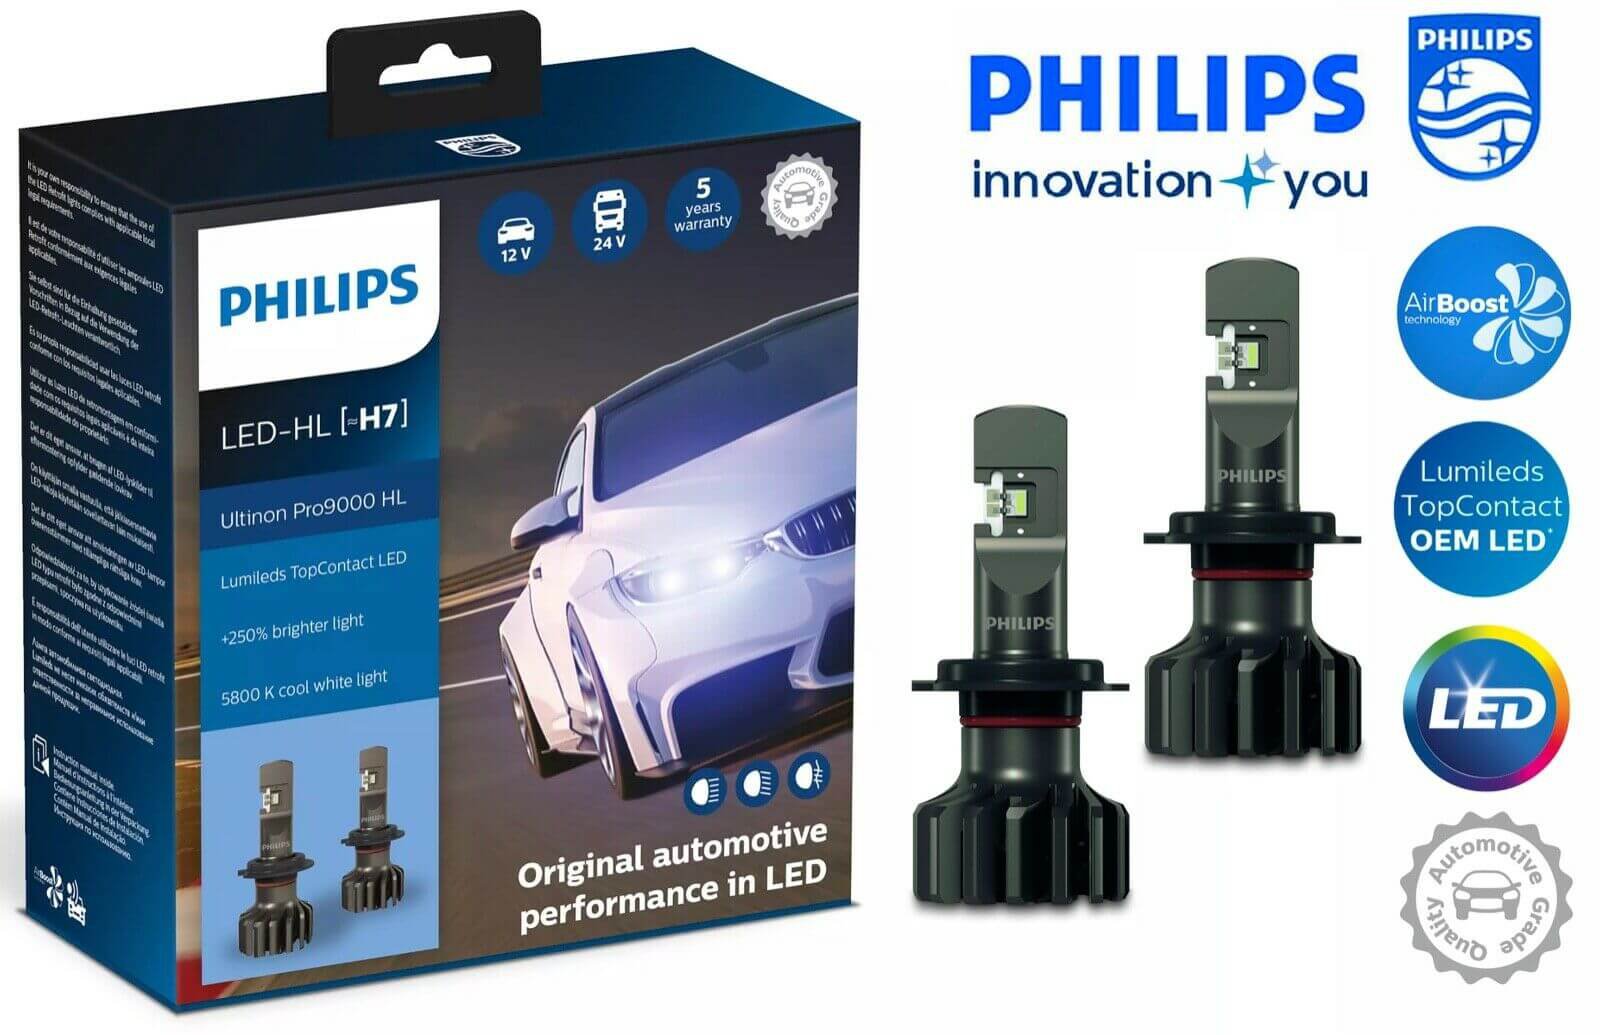 Hộp 2 Bóng đèn pha LED Philips Pro 9000 H7 LED 11972 U90 CW X212V-24V-5800K tăng sáng 250% cho xe hơi xe ô tô